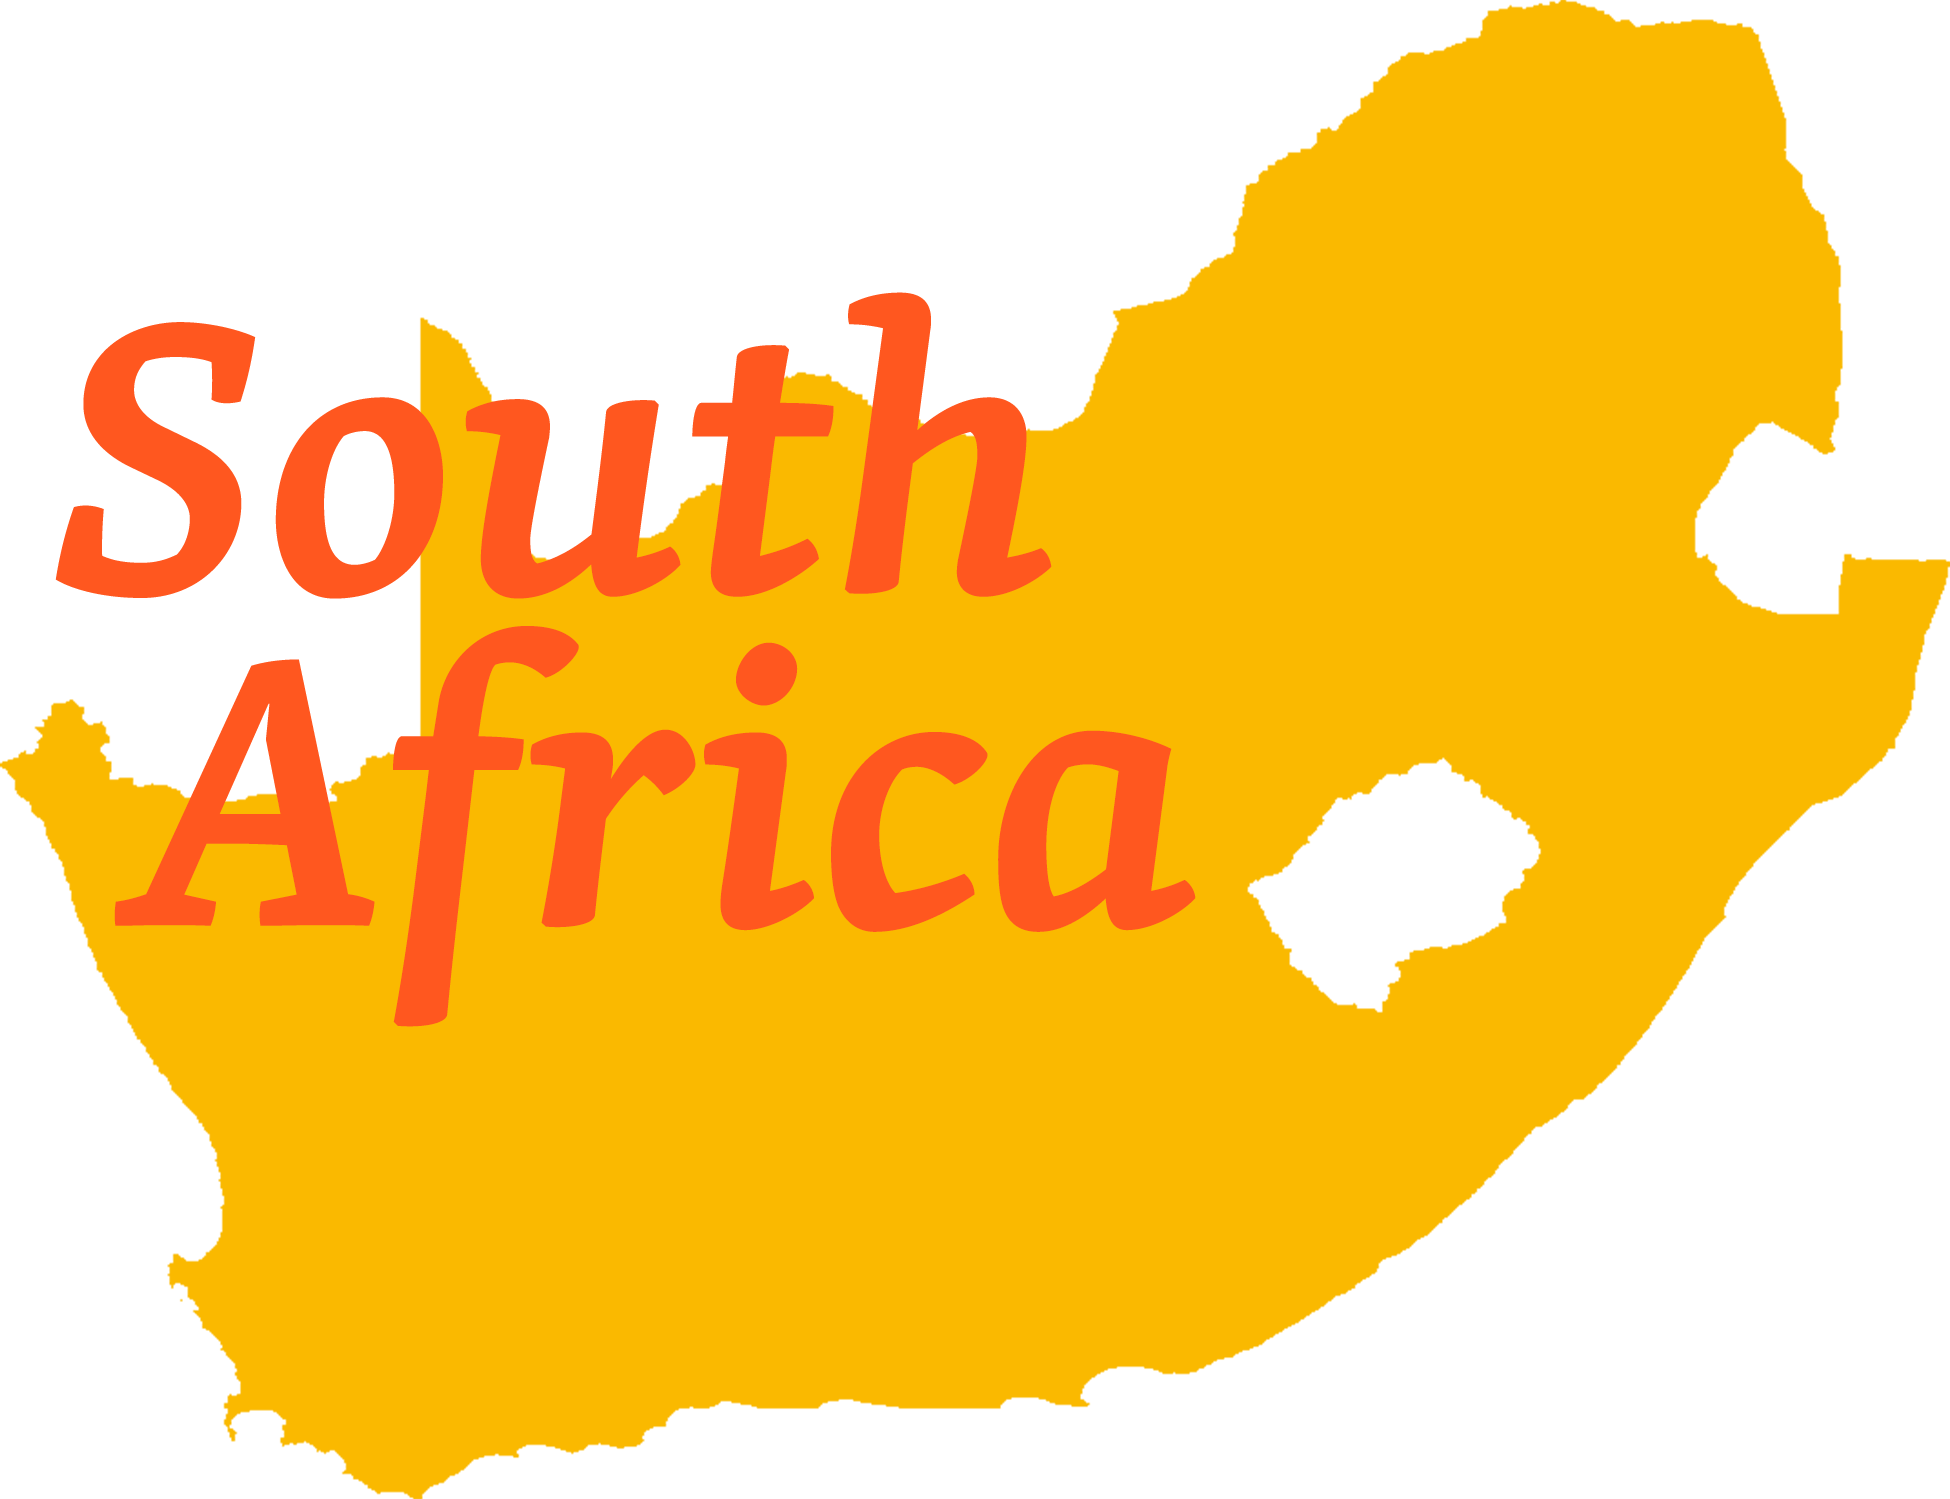 South Africa Statistics - South Africa Statistics (1950x1499)